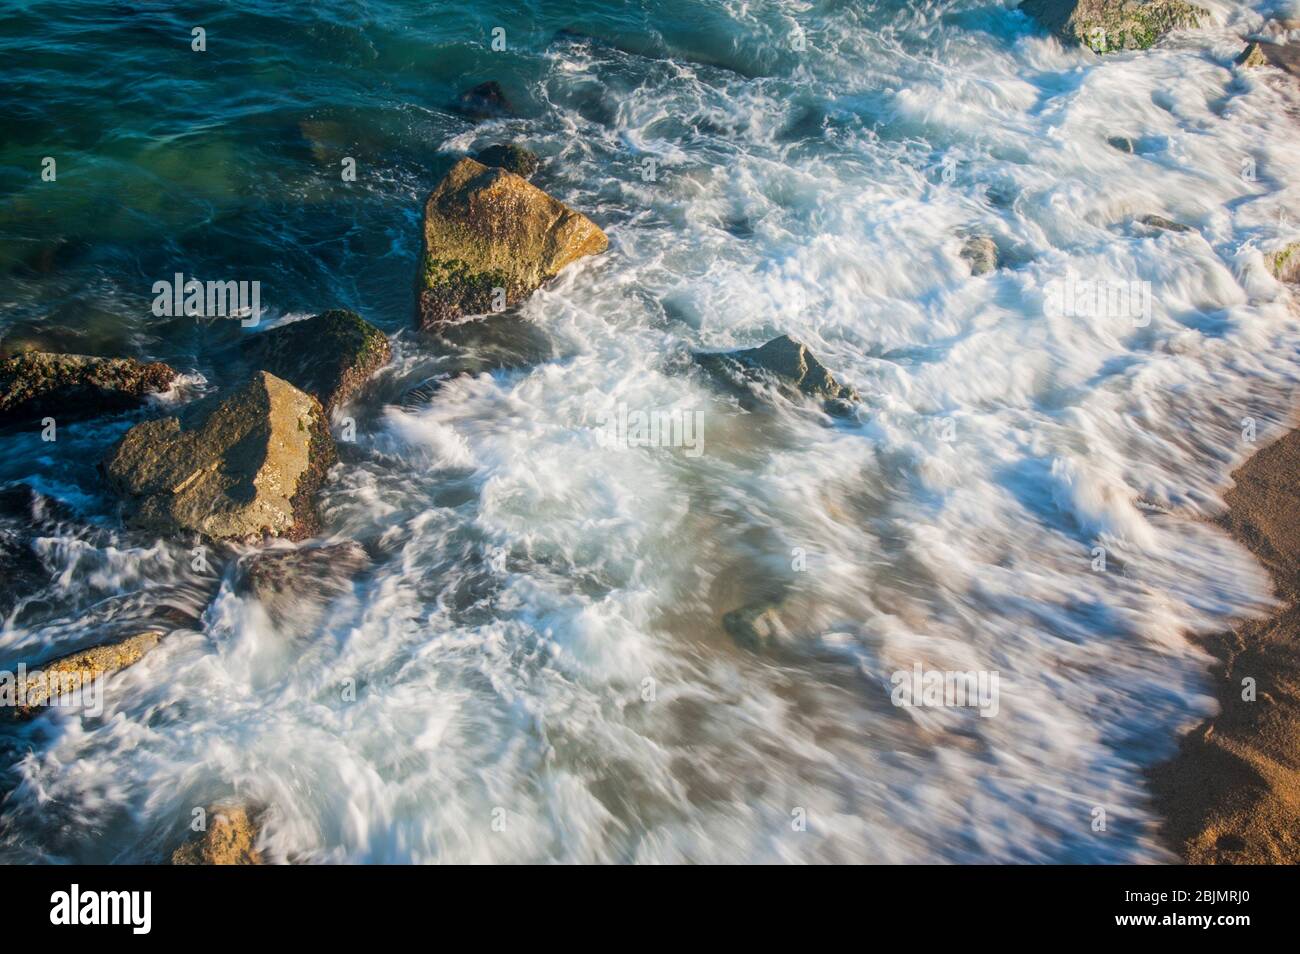 Luftaufnahme des Strandes von badalona mit dem Meer in Bewegung. Stockfoto